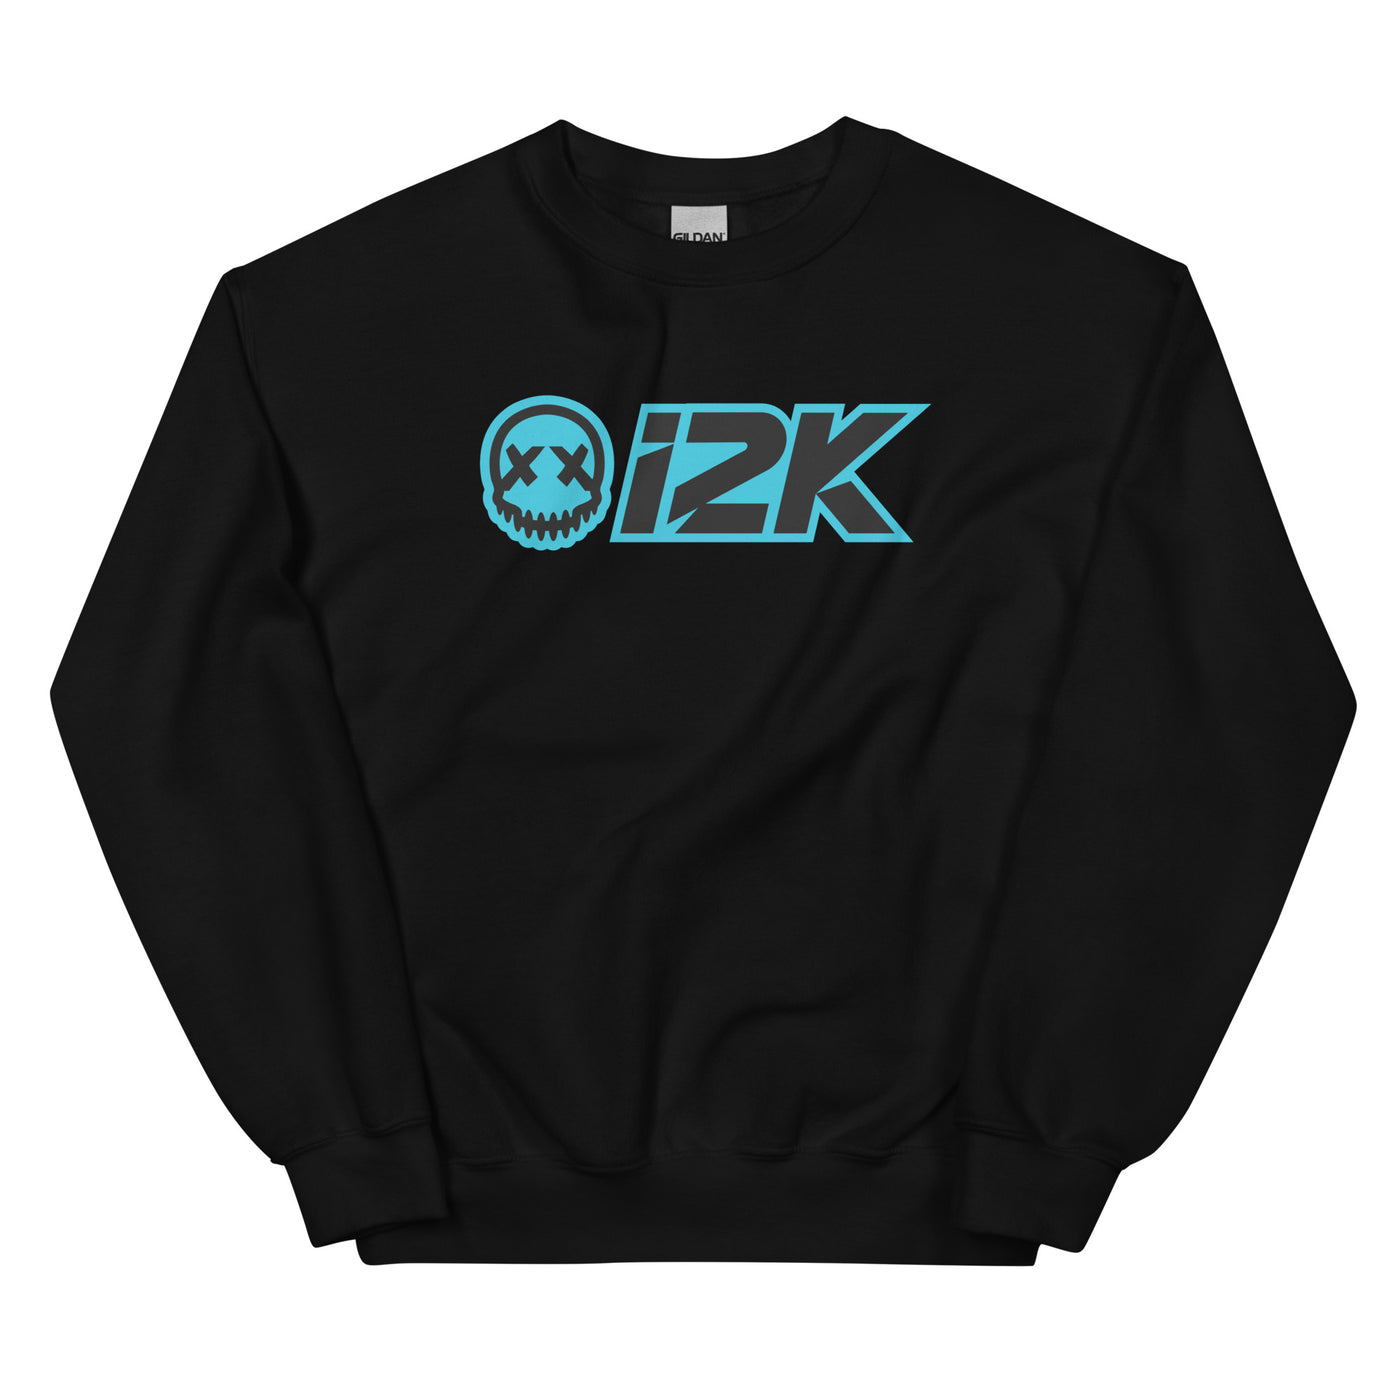 i2k Unisex Crew Neck Sweater